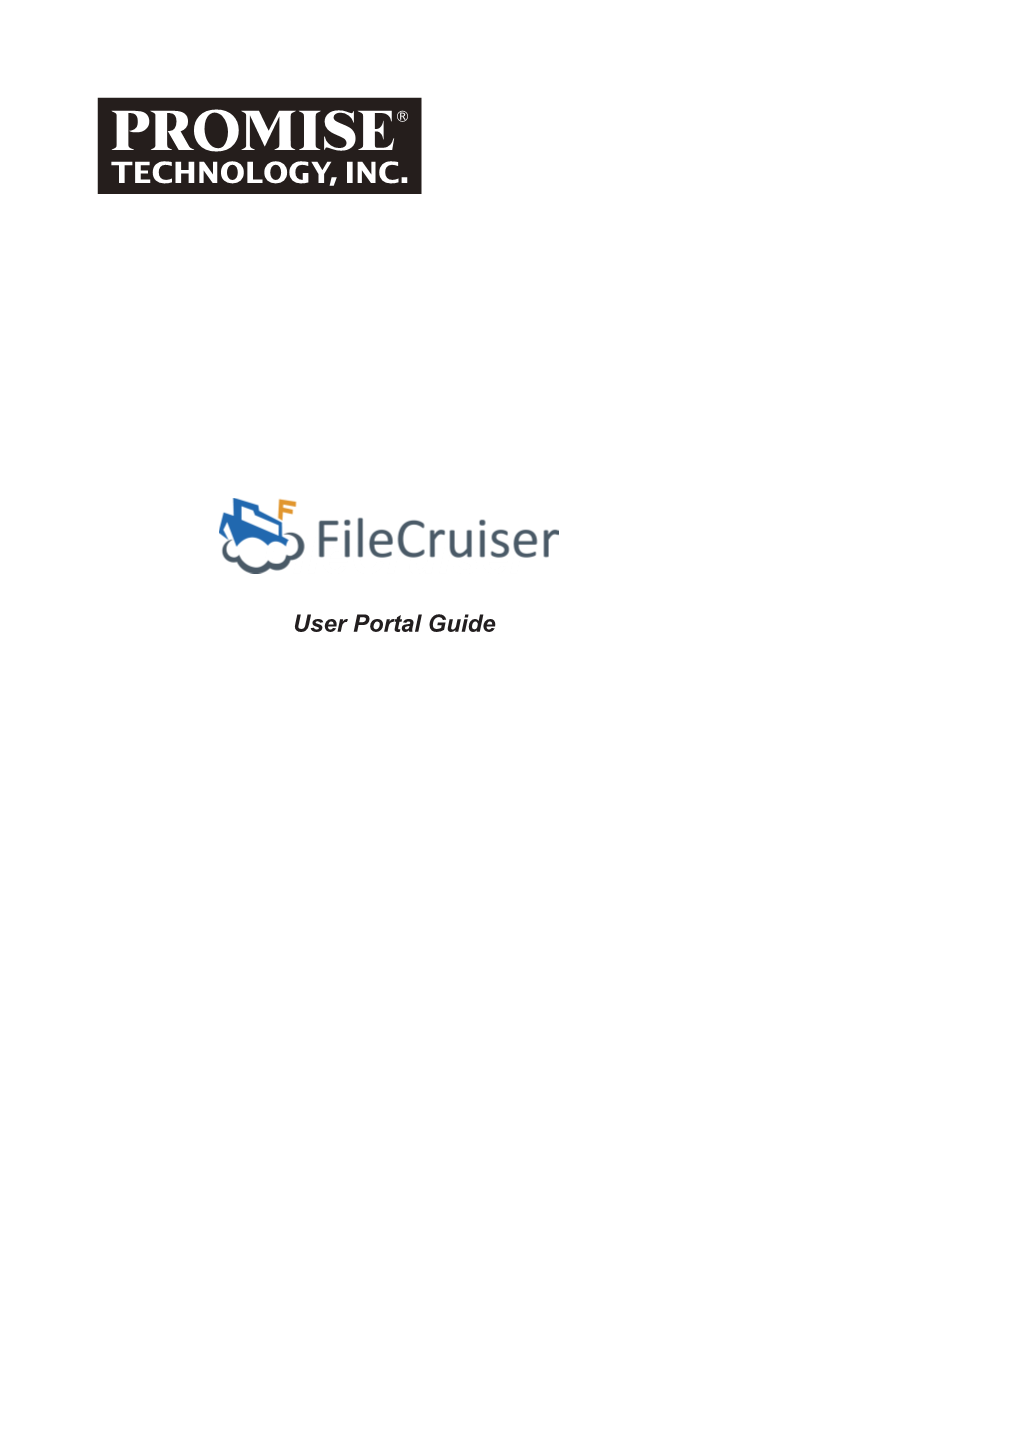 Filecruiser User Portal Guide Filecruiser User Portal Guide Contents